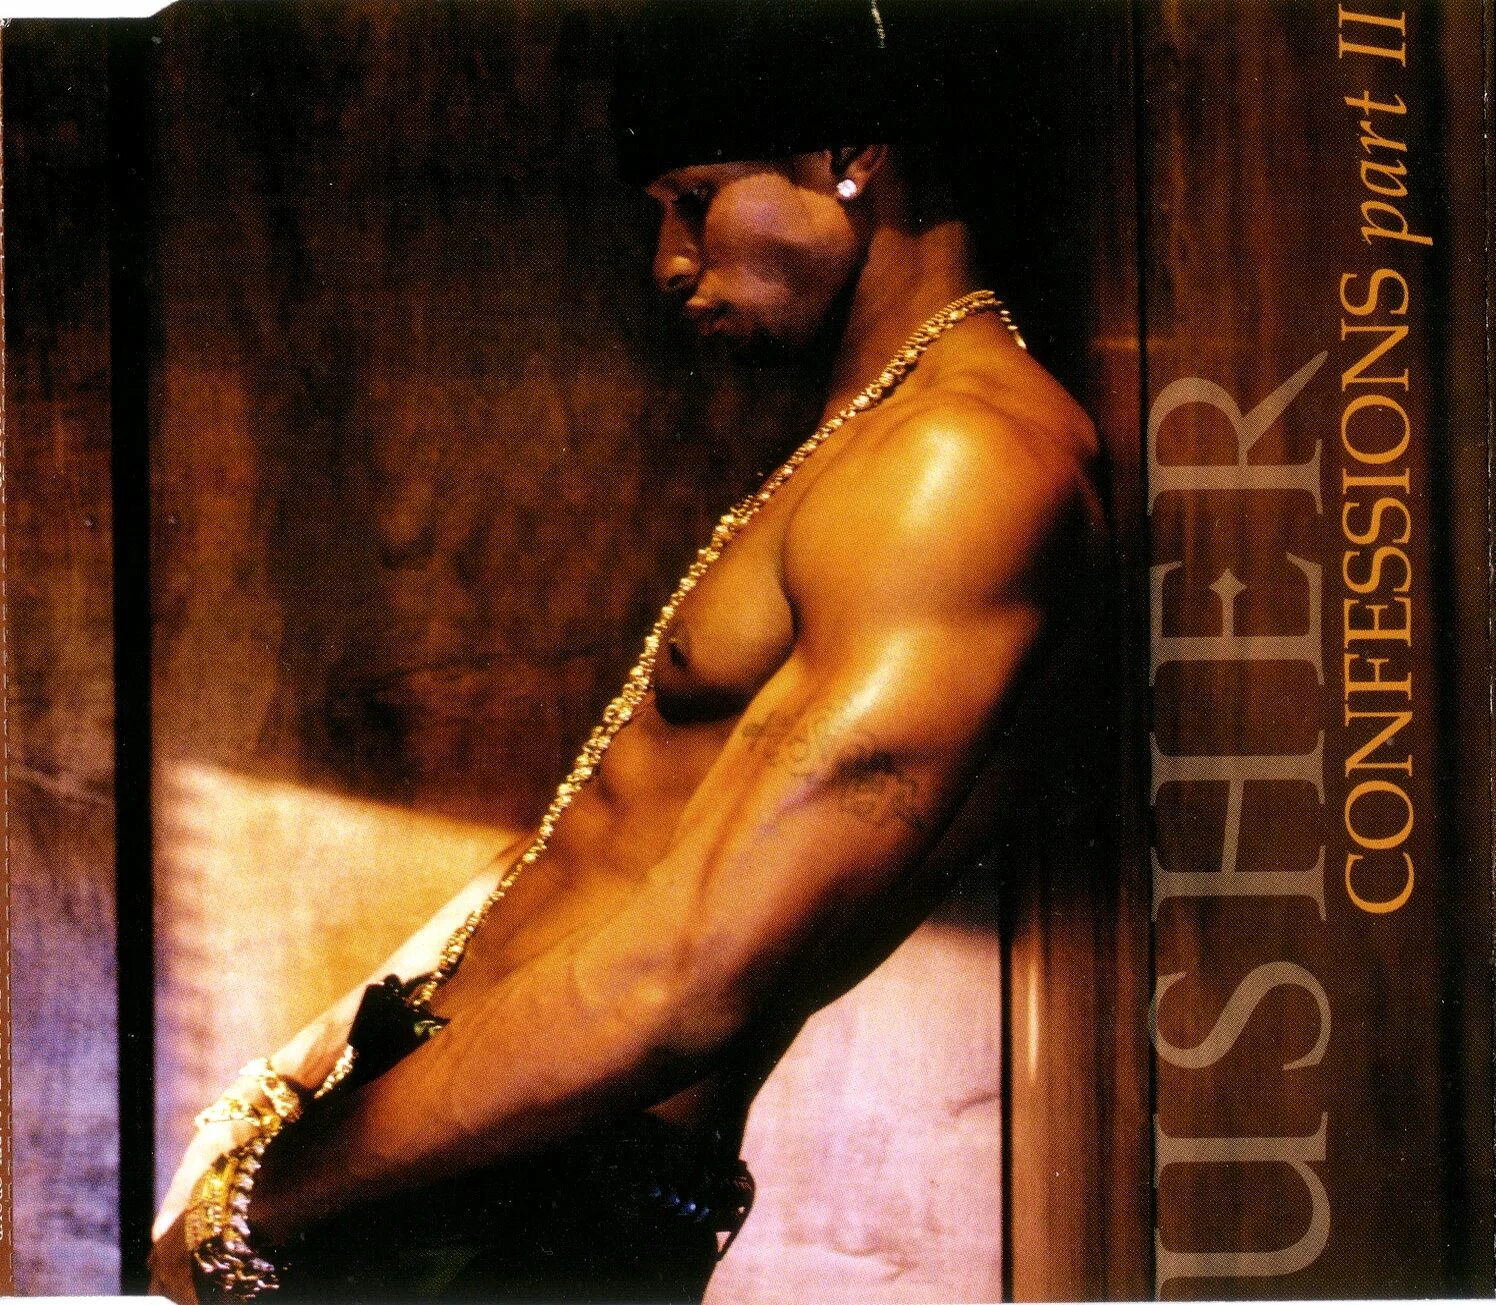 Usher Confessions. Usher Confessions album. Usher - Confessions (2004). Confessions Part II Ашер.